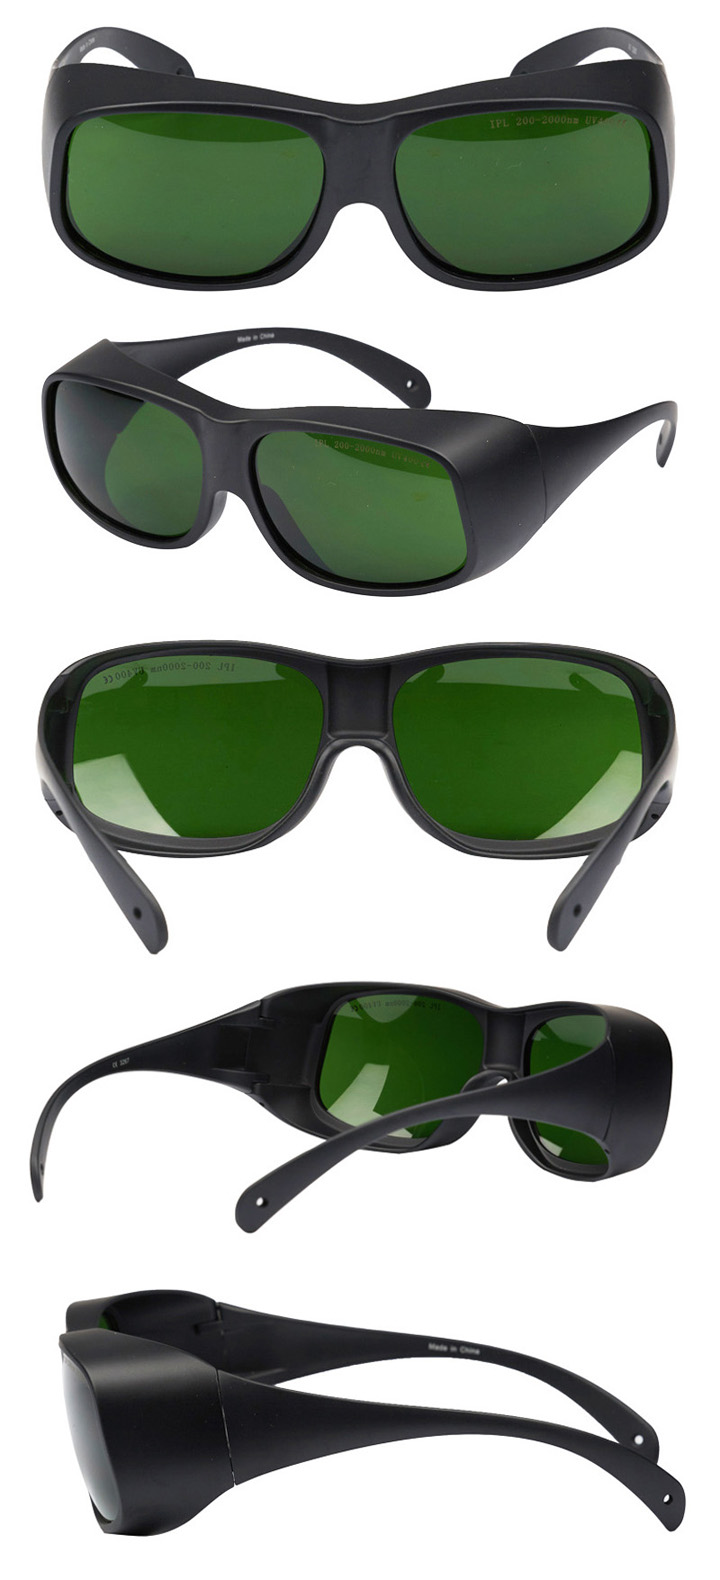 IPL Laserveiligheidsbril